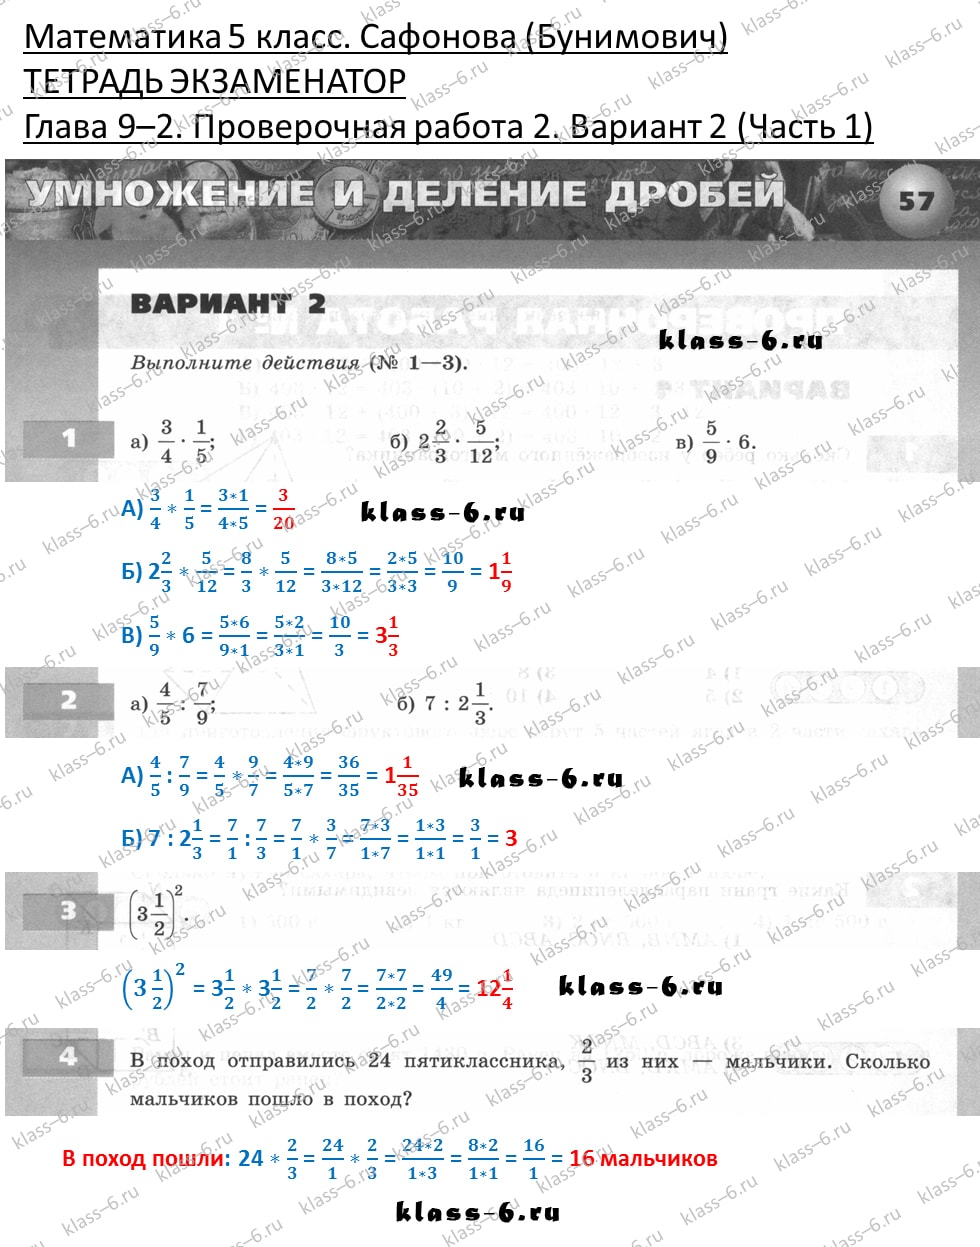 решебник и гдз по математике тетрадь экзаменатор Сафонова, Бунимович 5 класс глава 9 (2) контрольная работа 2 вариант 2 (1)